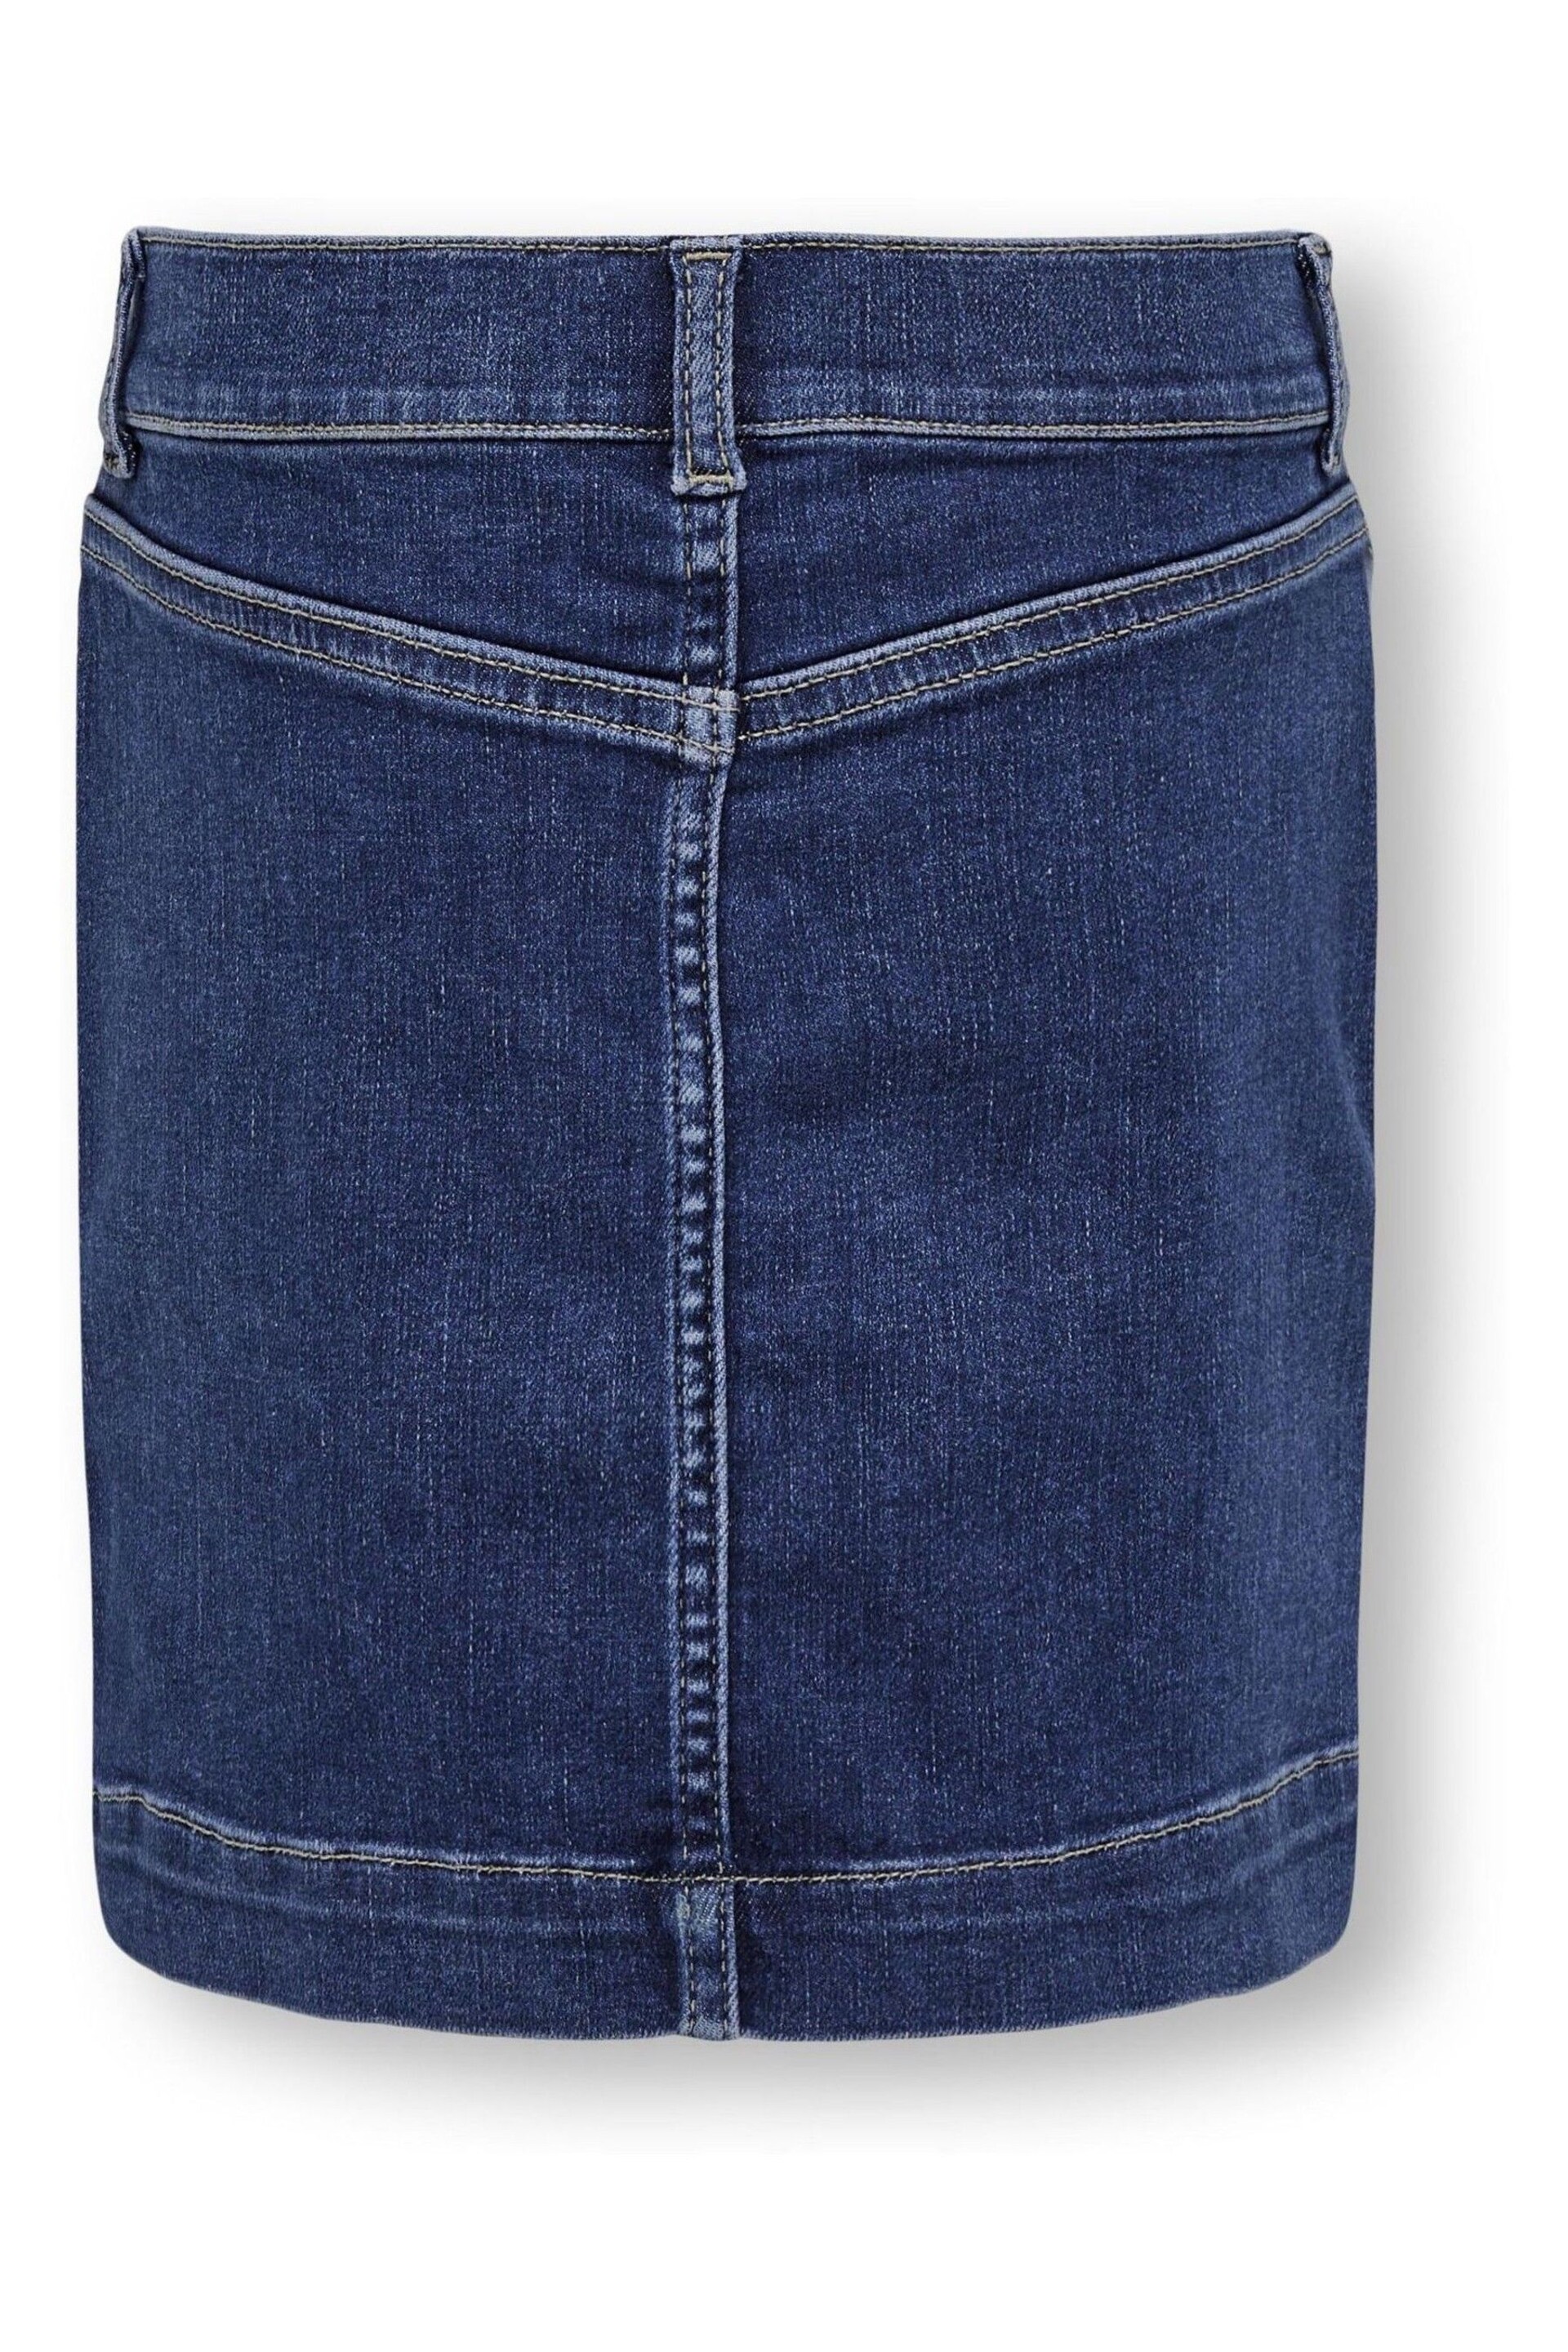 ONLY KIDS Blue Utility Pocket Denim Mini Skirt - Image 3 of 3